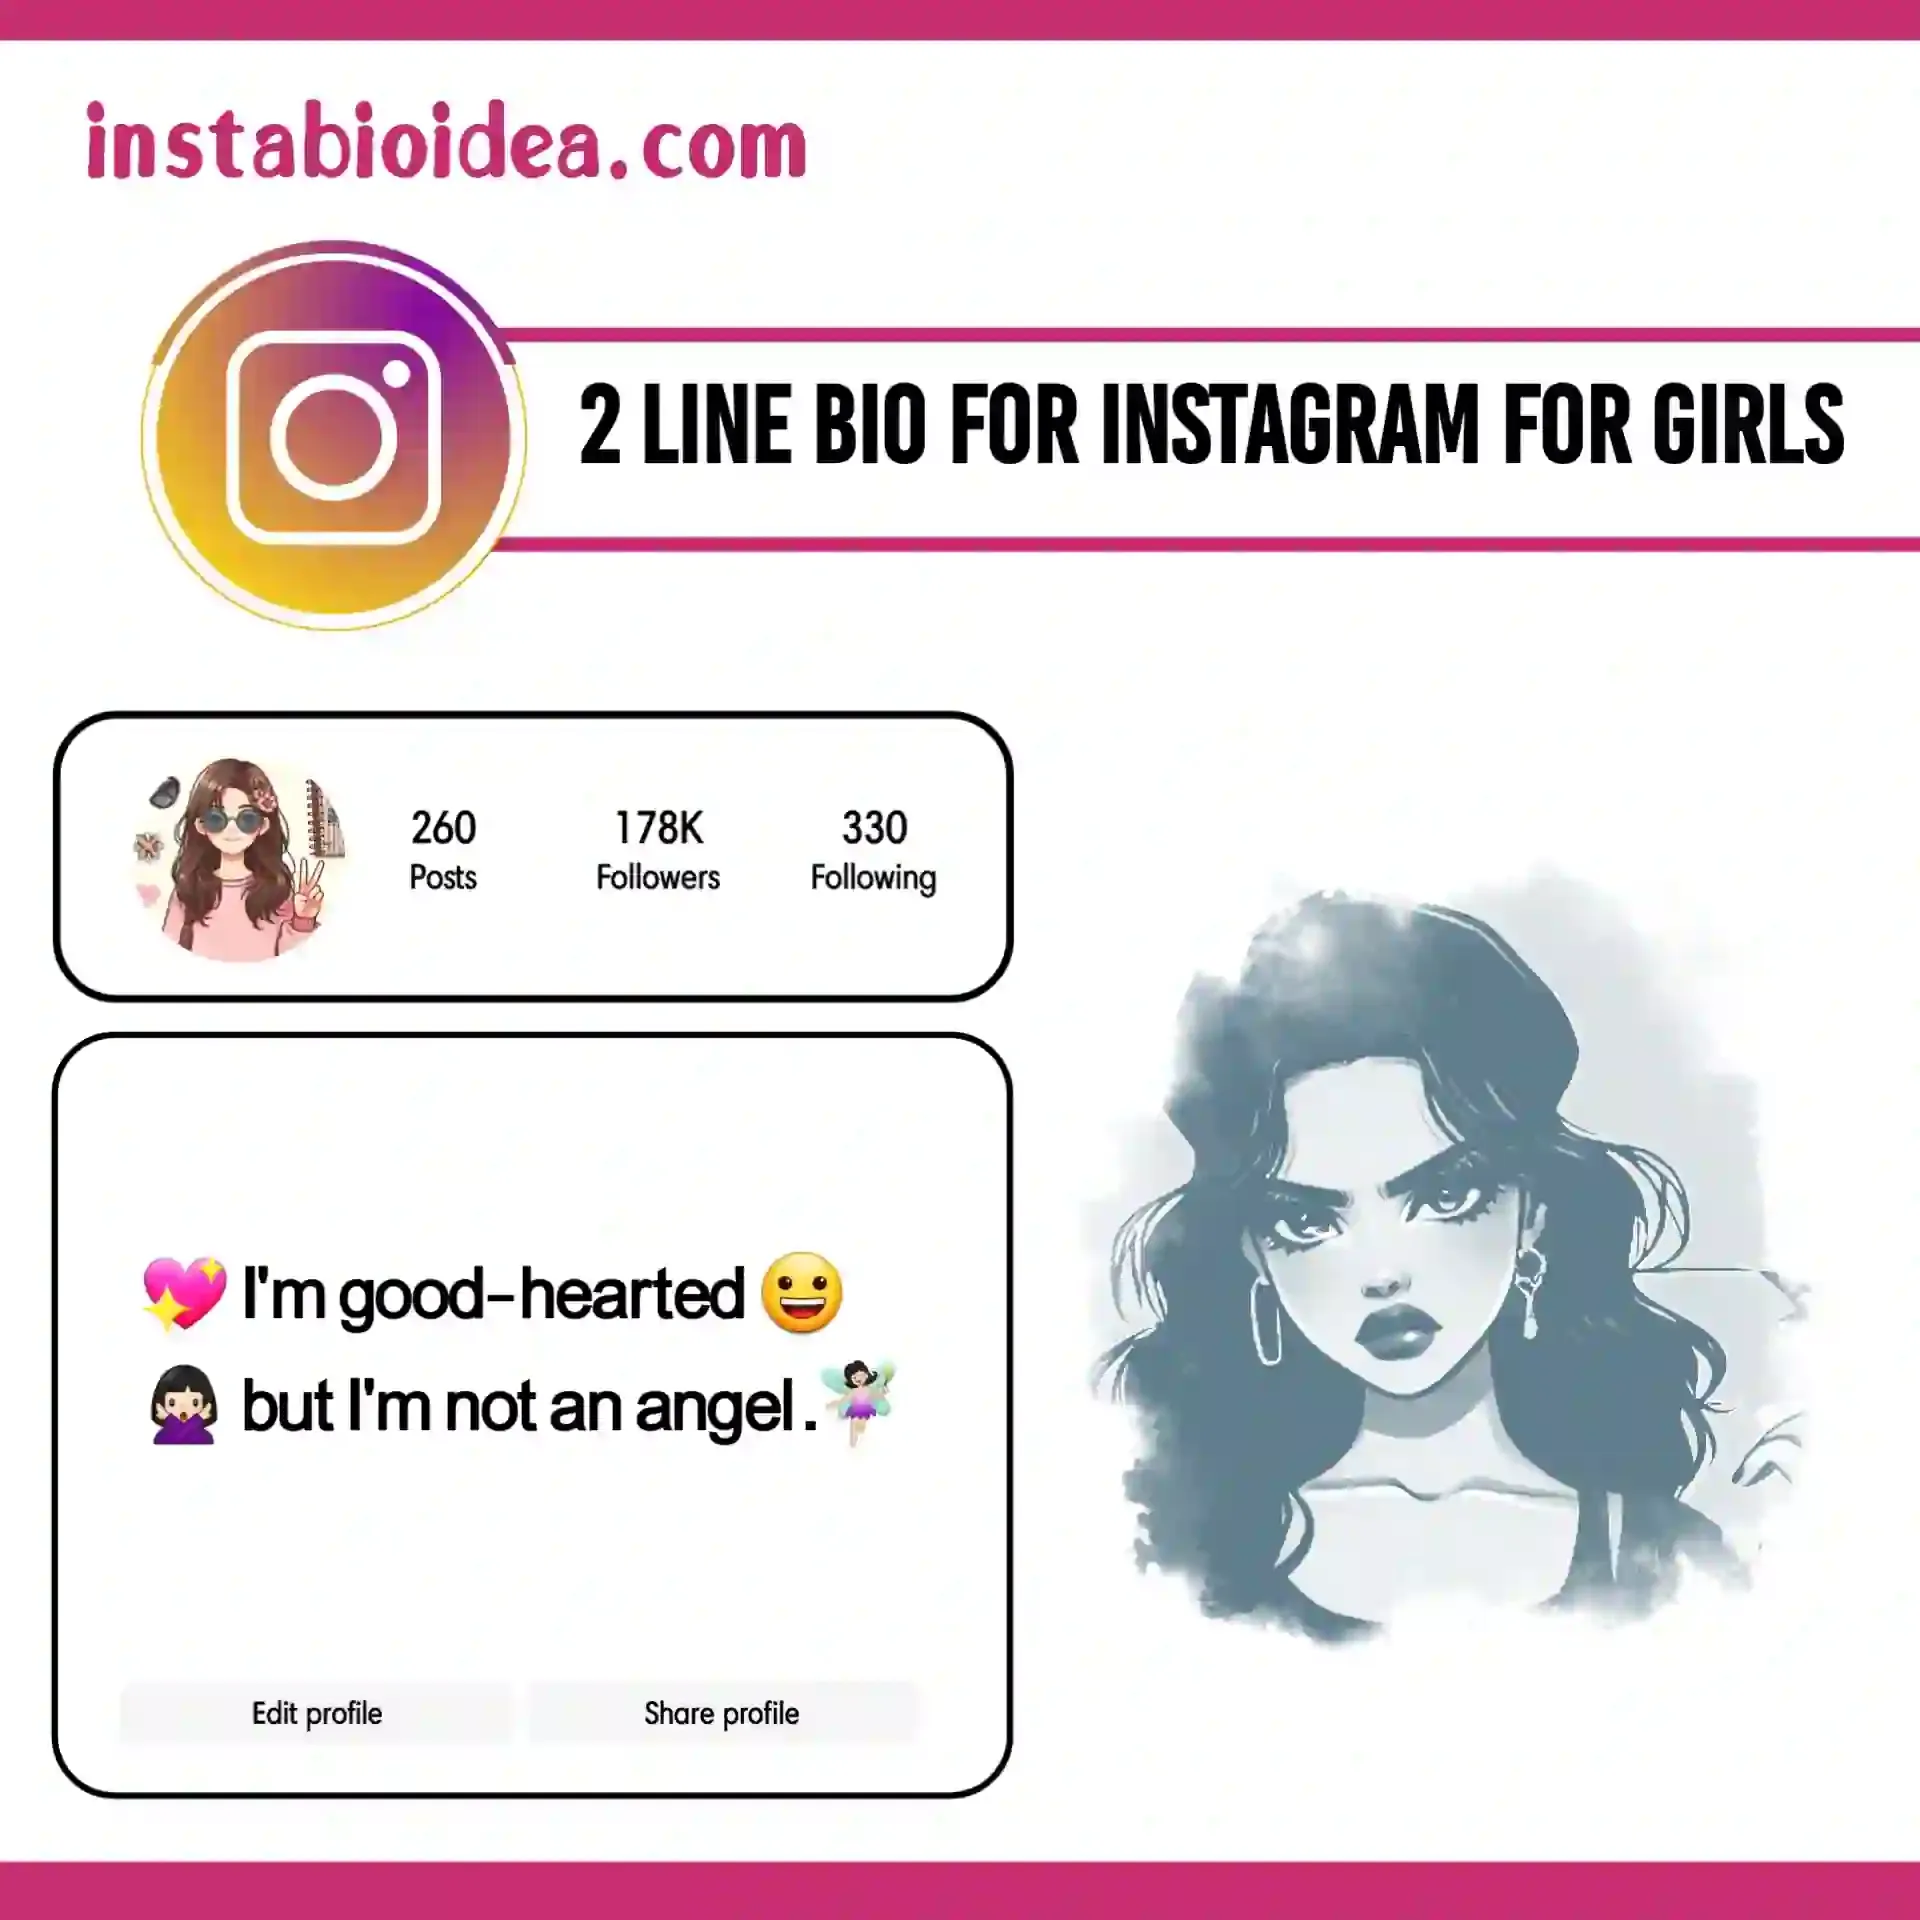 2 line bio for instagram for girls image